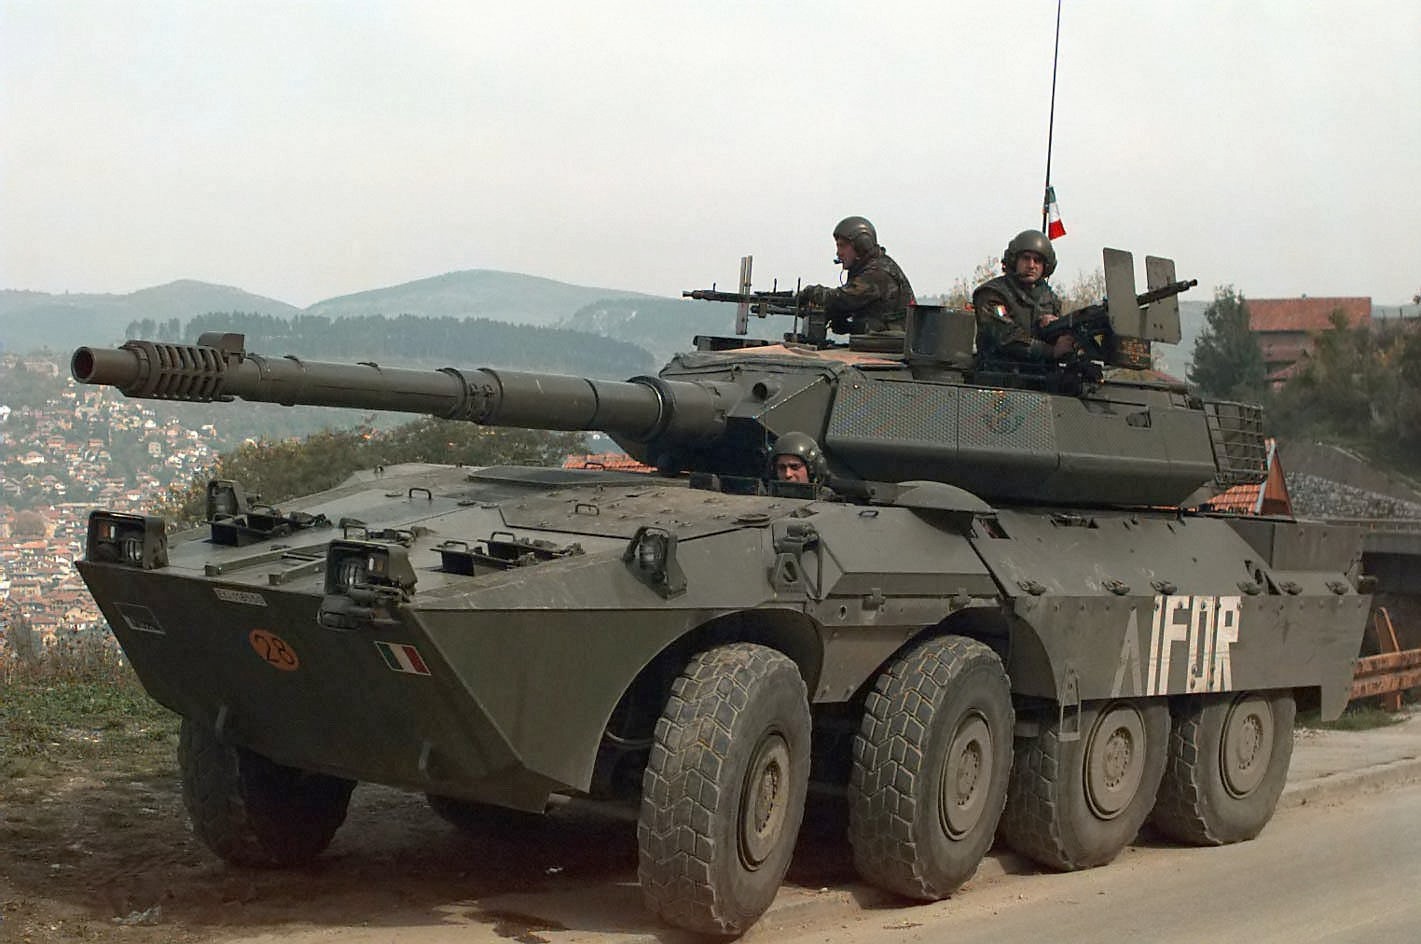 Καταστροφείς αρμάτων Centauro Β1 στέλνει η Ιταλία για να ενισχύσει τον ουκρανικό στρατό (βίντεο)